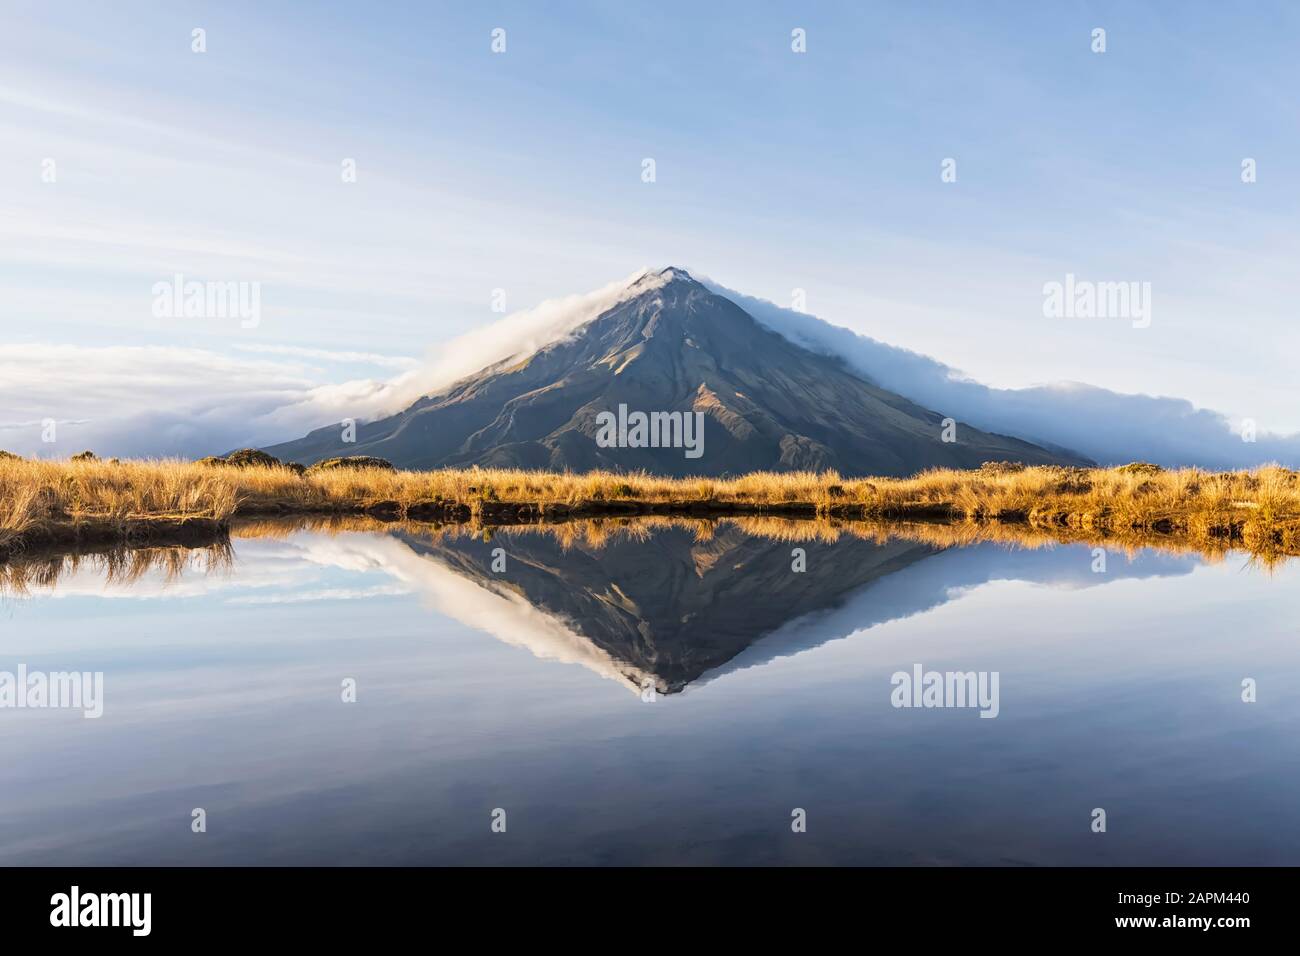 New Zealand, Mount Taranaki volcano reflecting in shiny lake at dawn Stock Photo